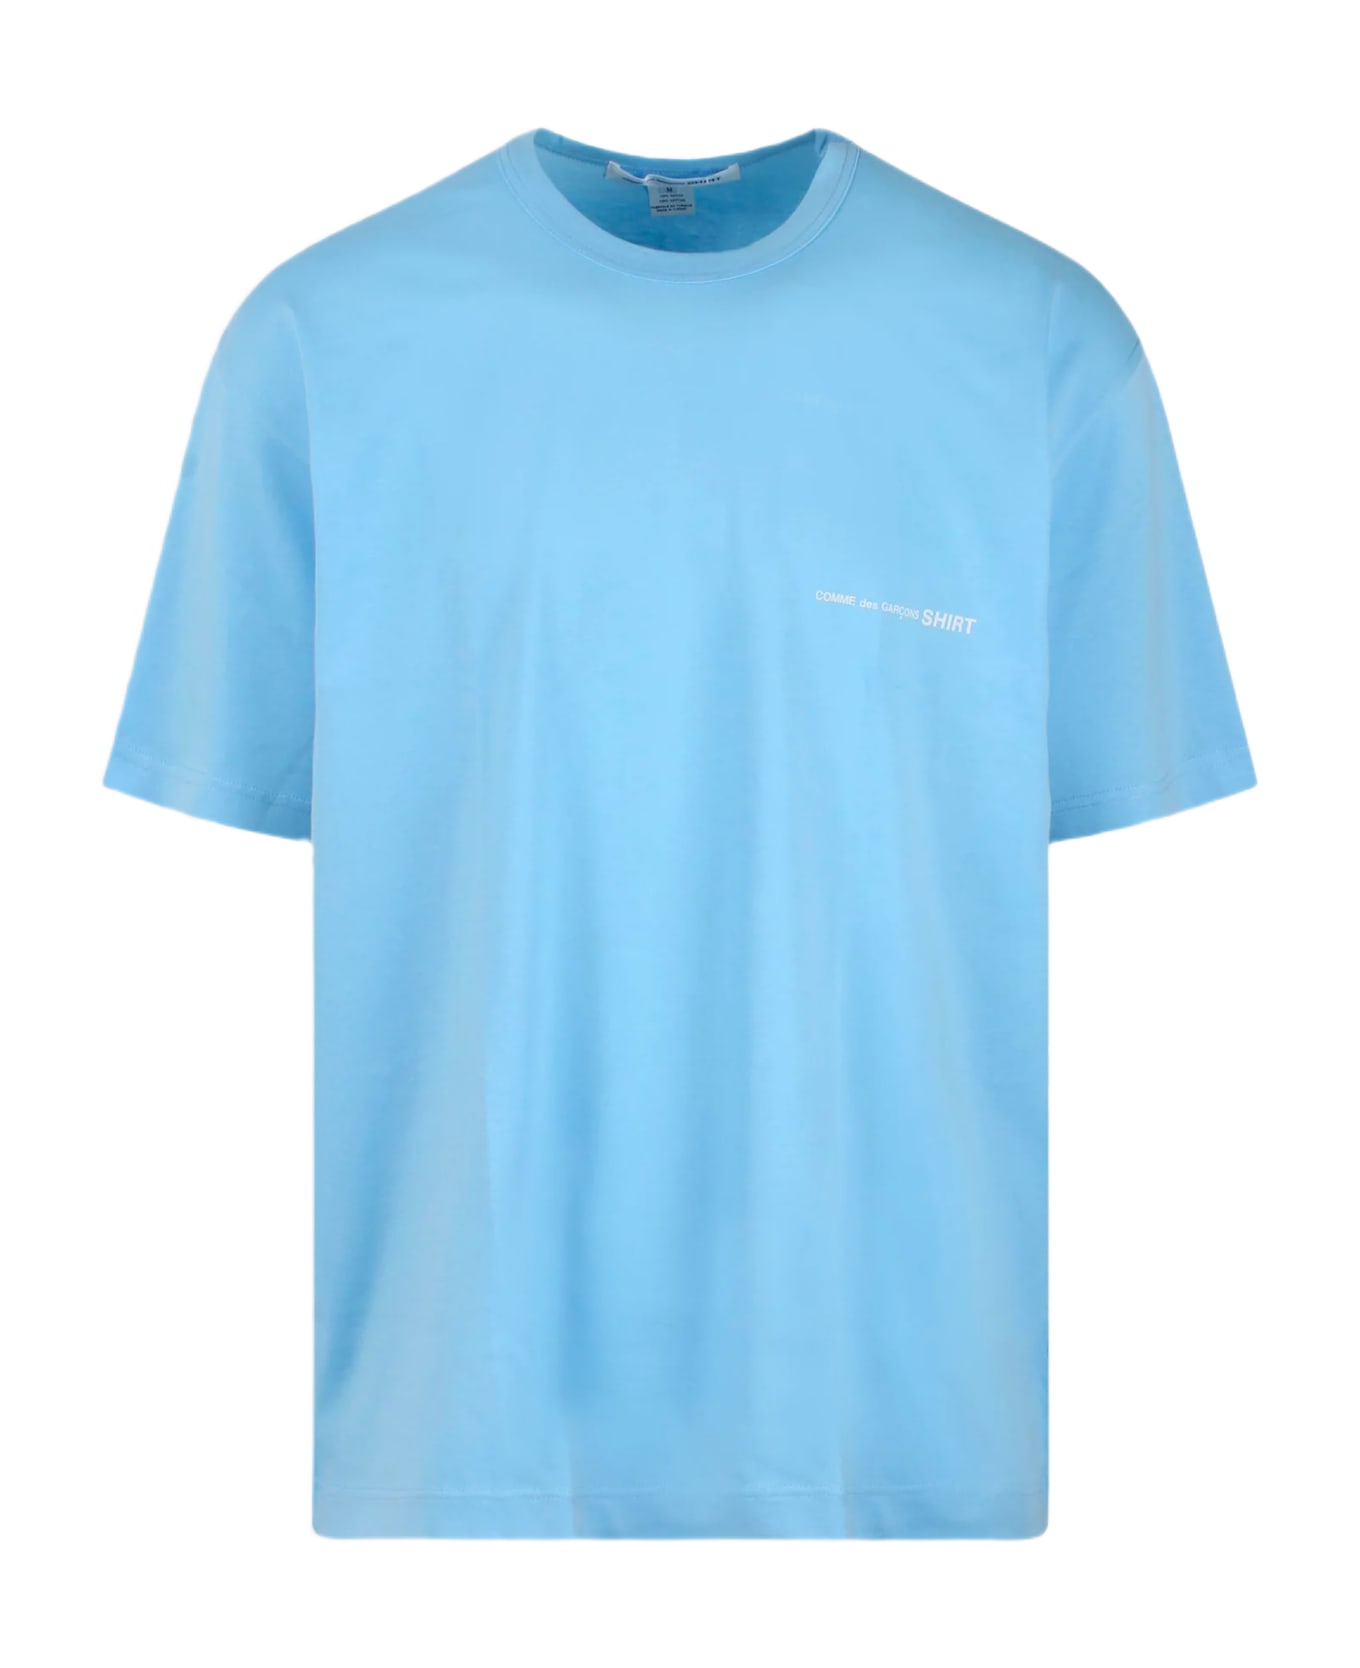 Comme des Garçons Shirt Mens T-shirt Knit Sky blue cotton oversize t-shirt with chest logo - Celeste